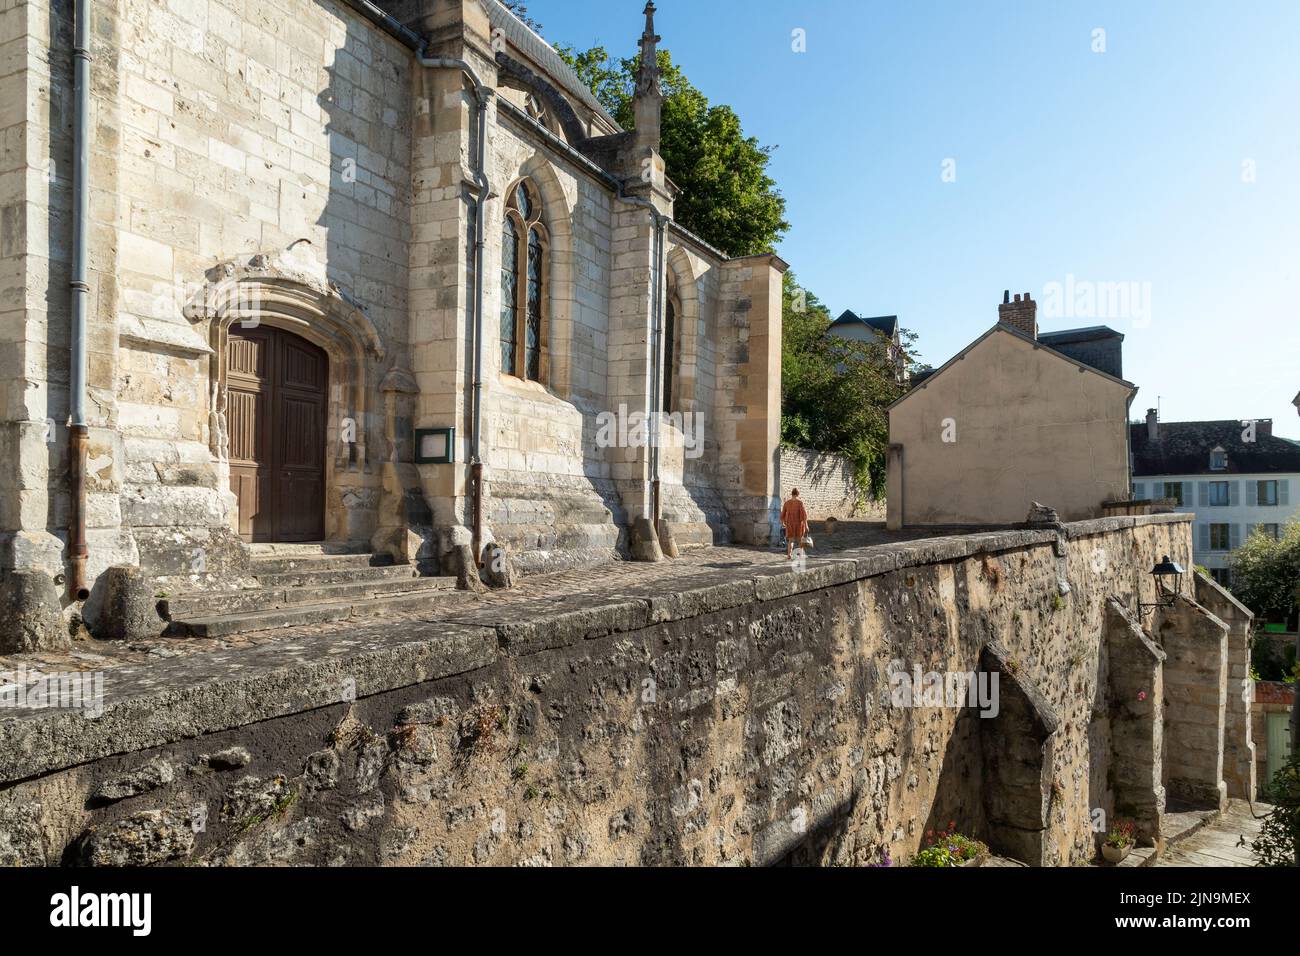 France, Val d'Oise, Vexin Francais Natural Regional Park, La Roche Guyon, labelled Les Plus Beaux Villages de France (The Most Beautiful Villages of F Stock Photo